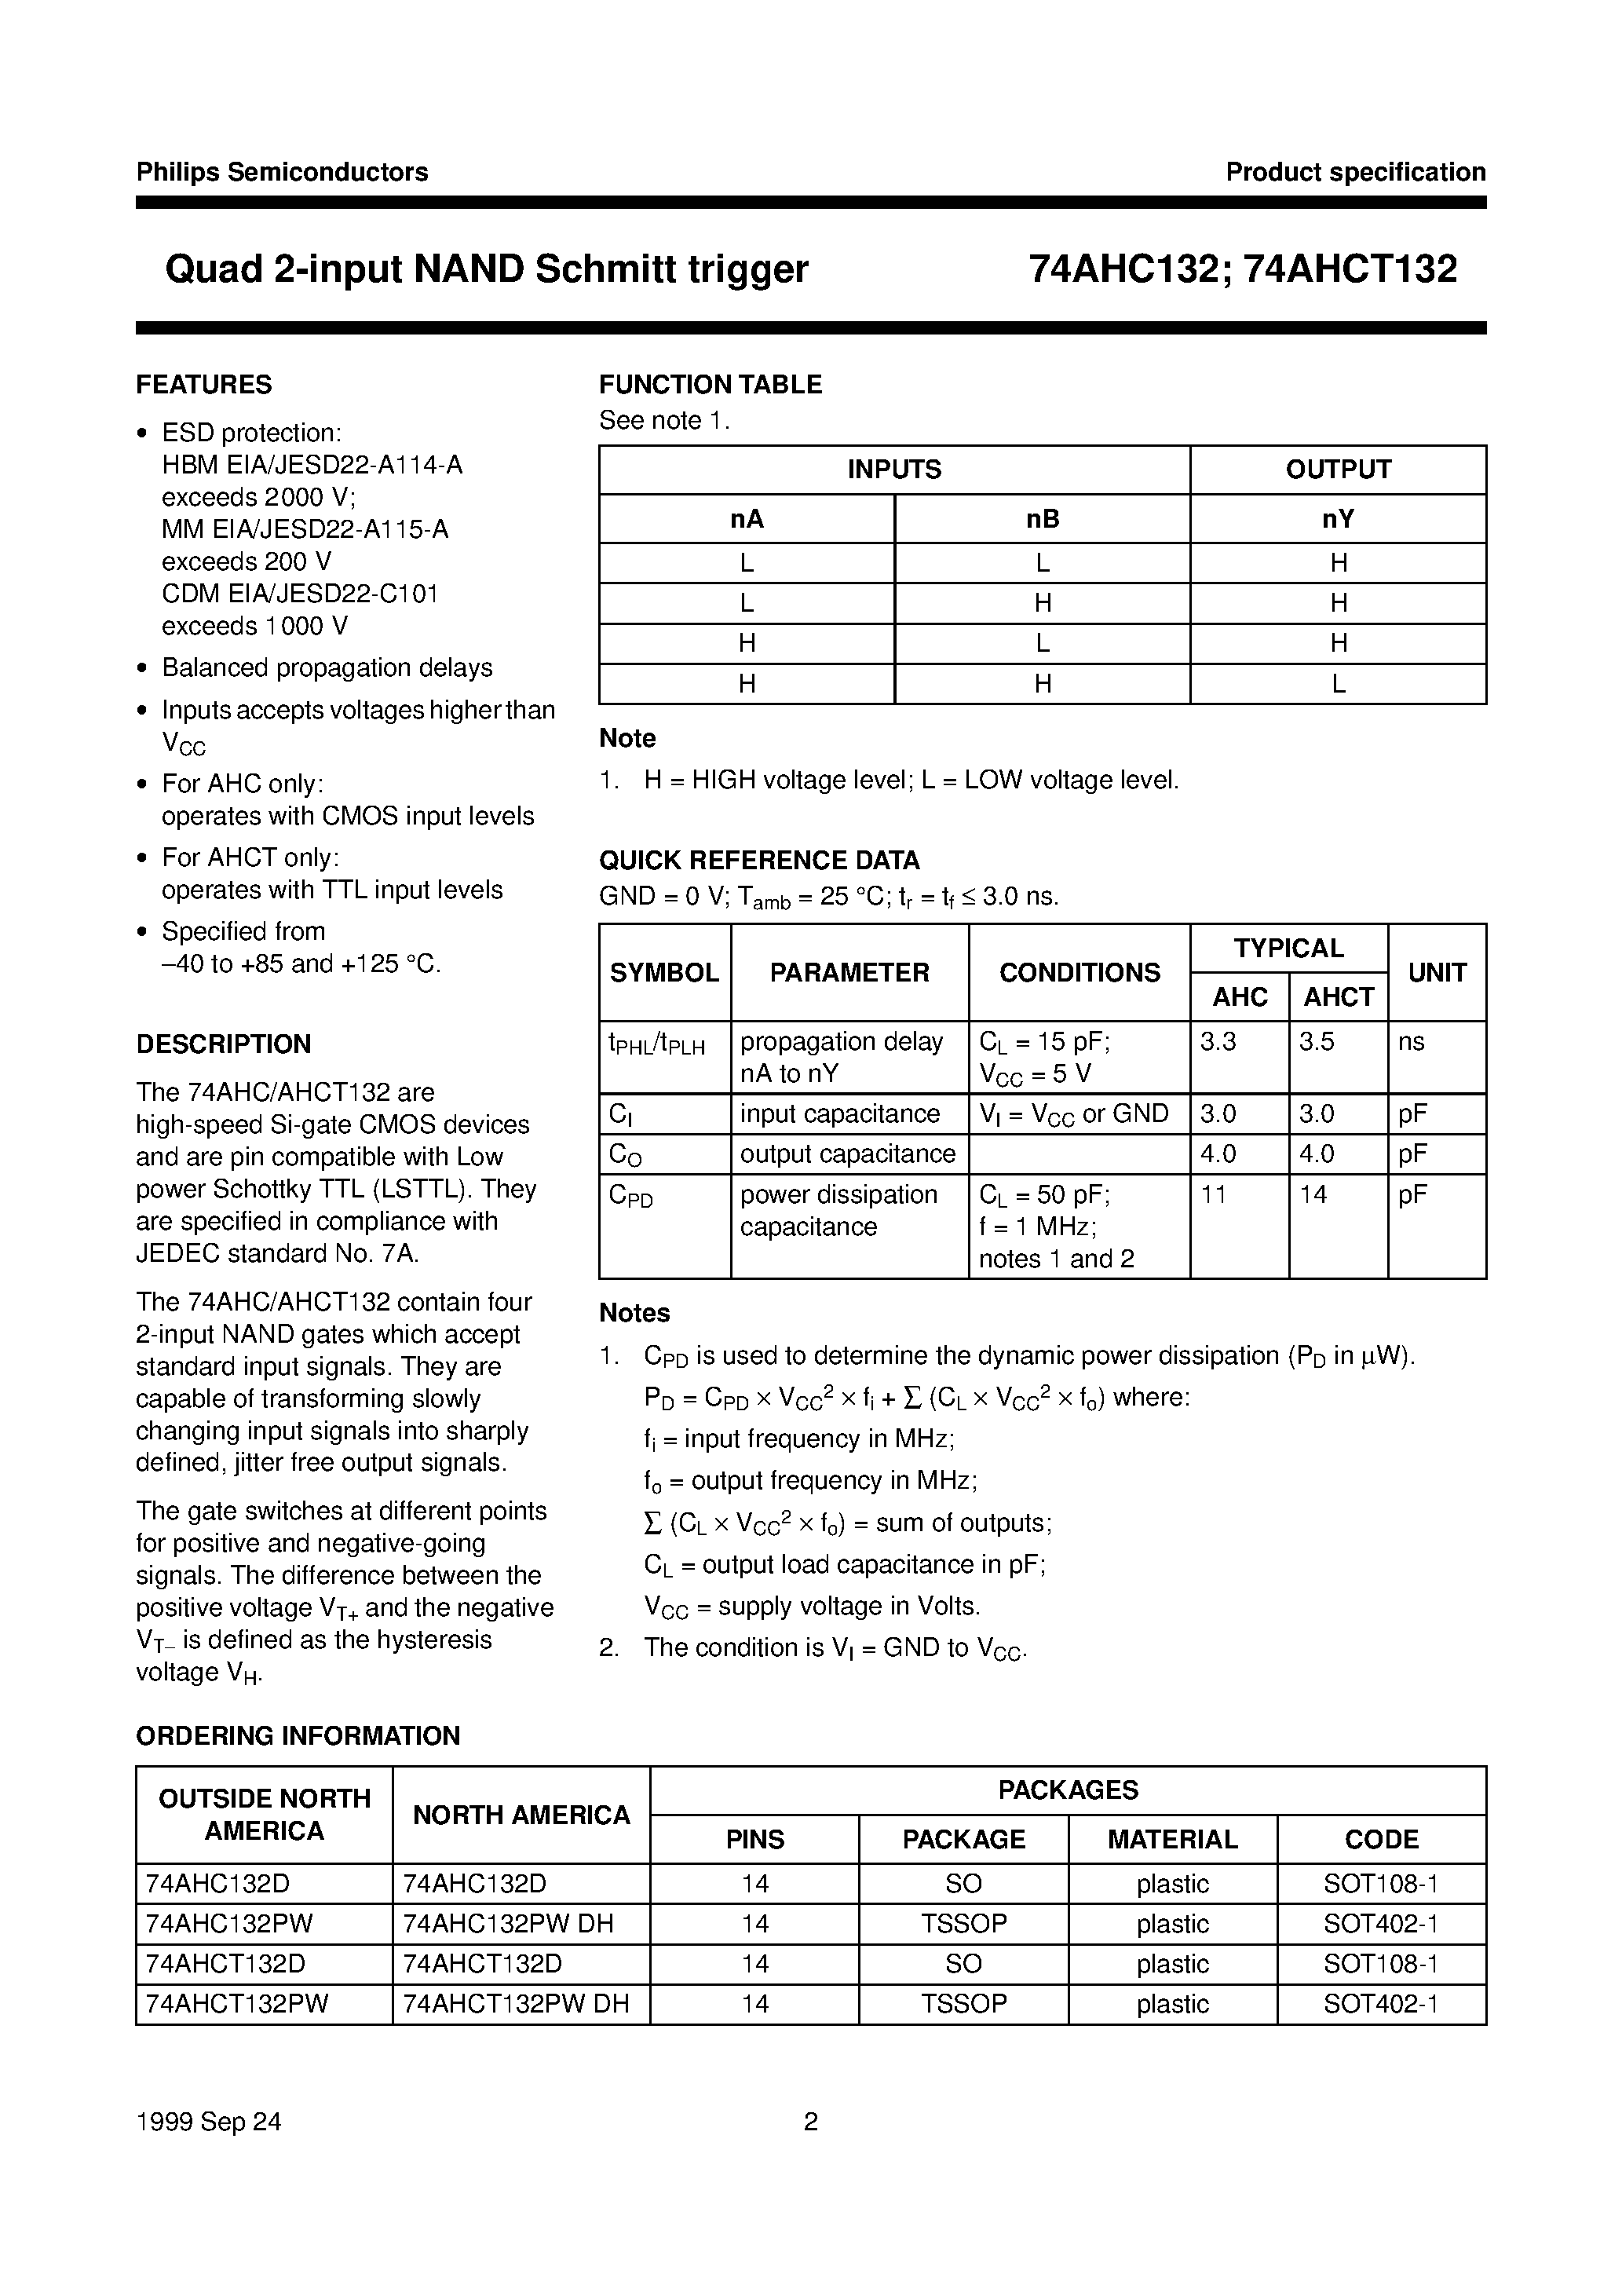 Datasheet 74AHC132D - Quad 2-input NAND Schmitt trigger page 2